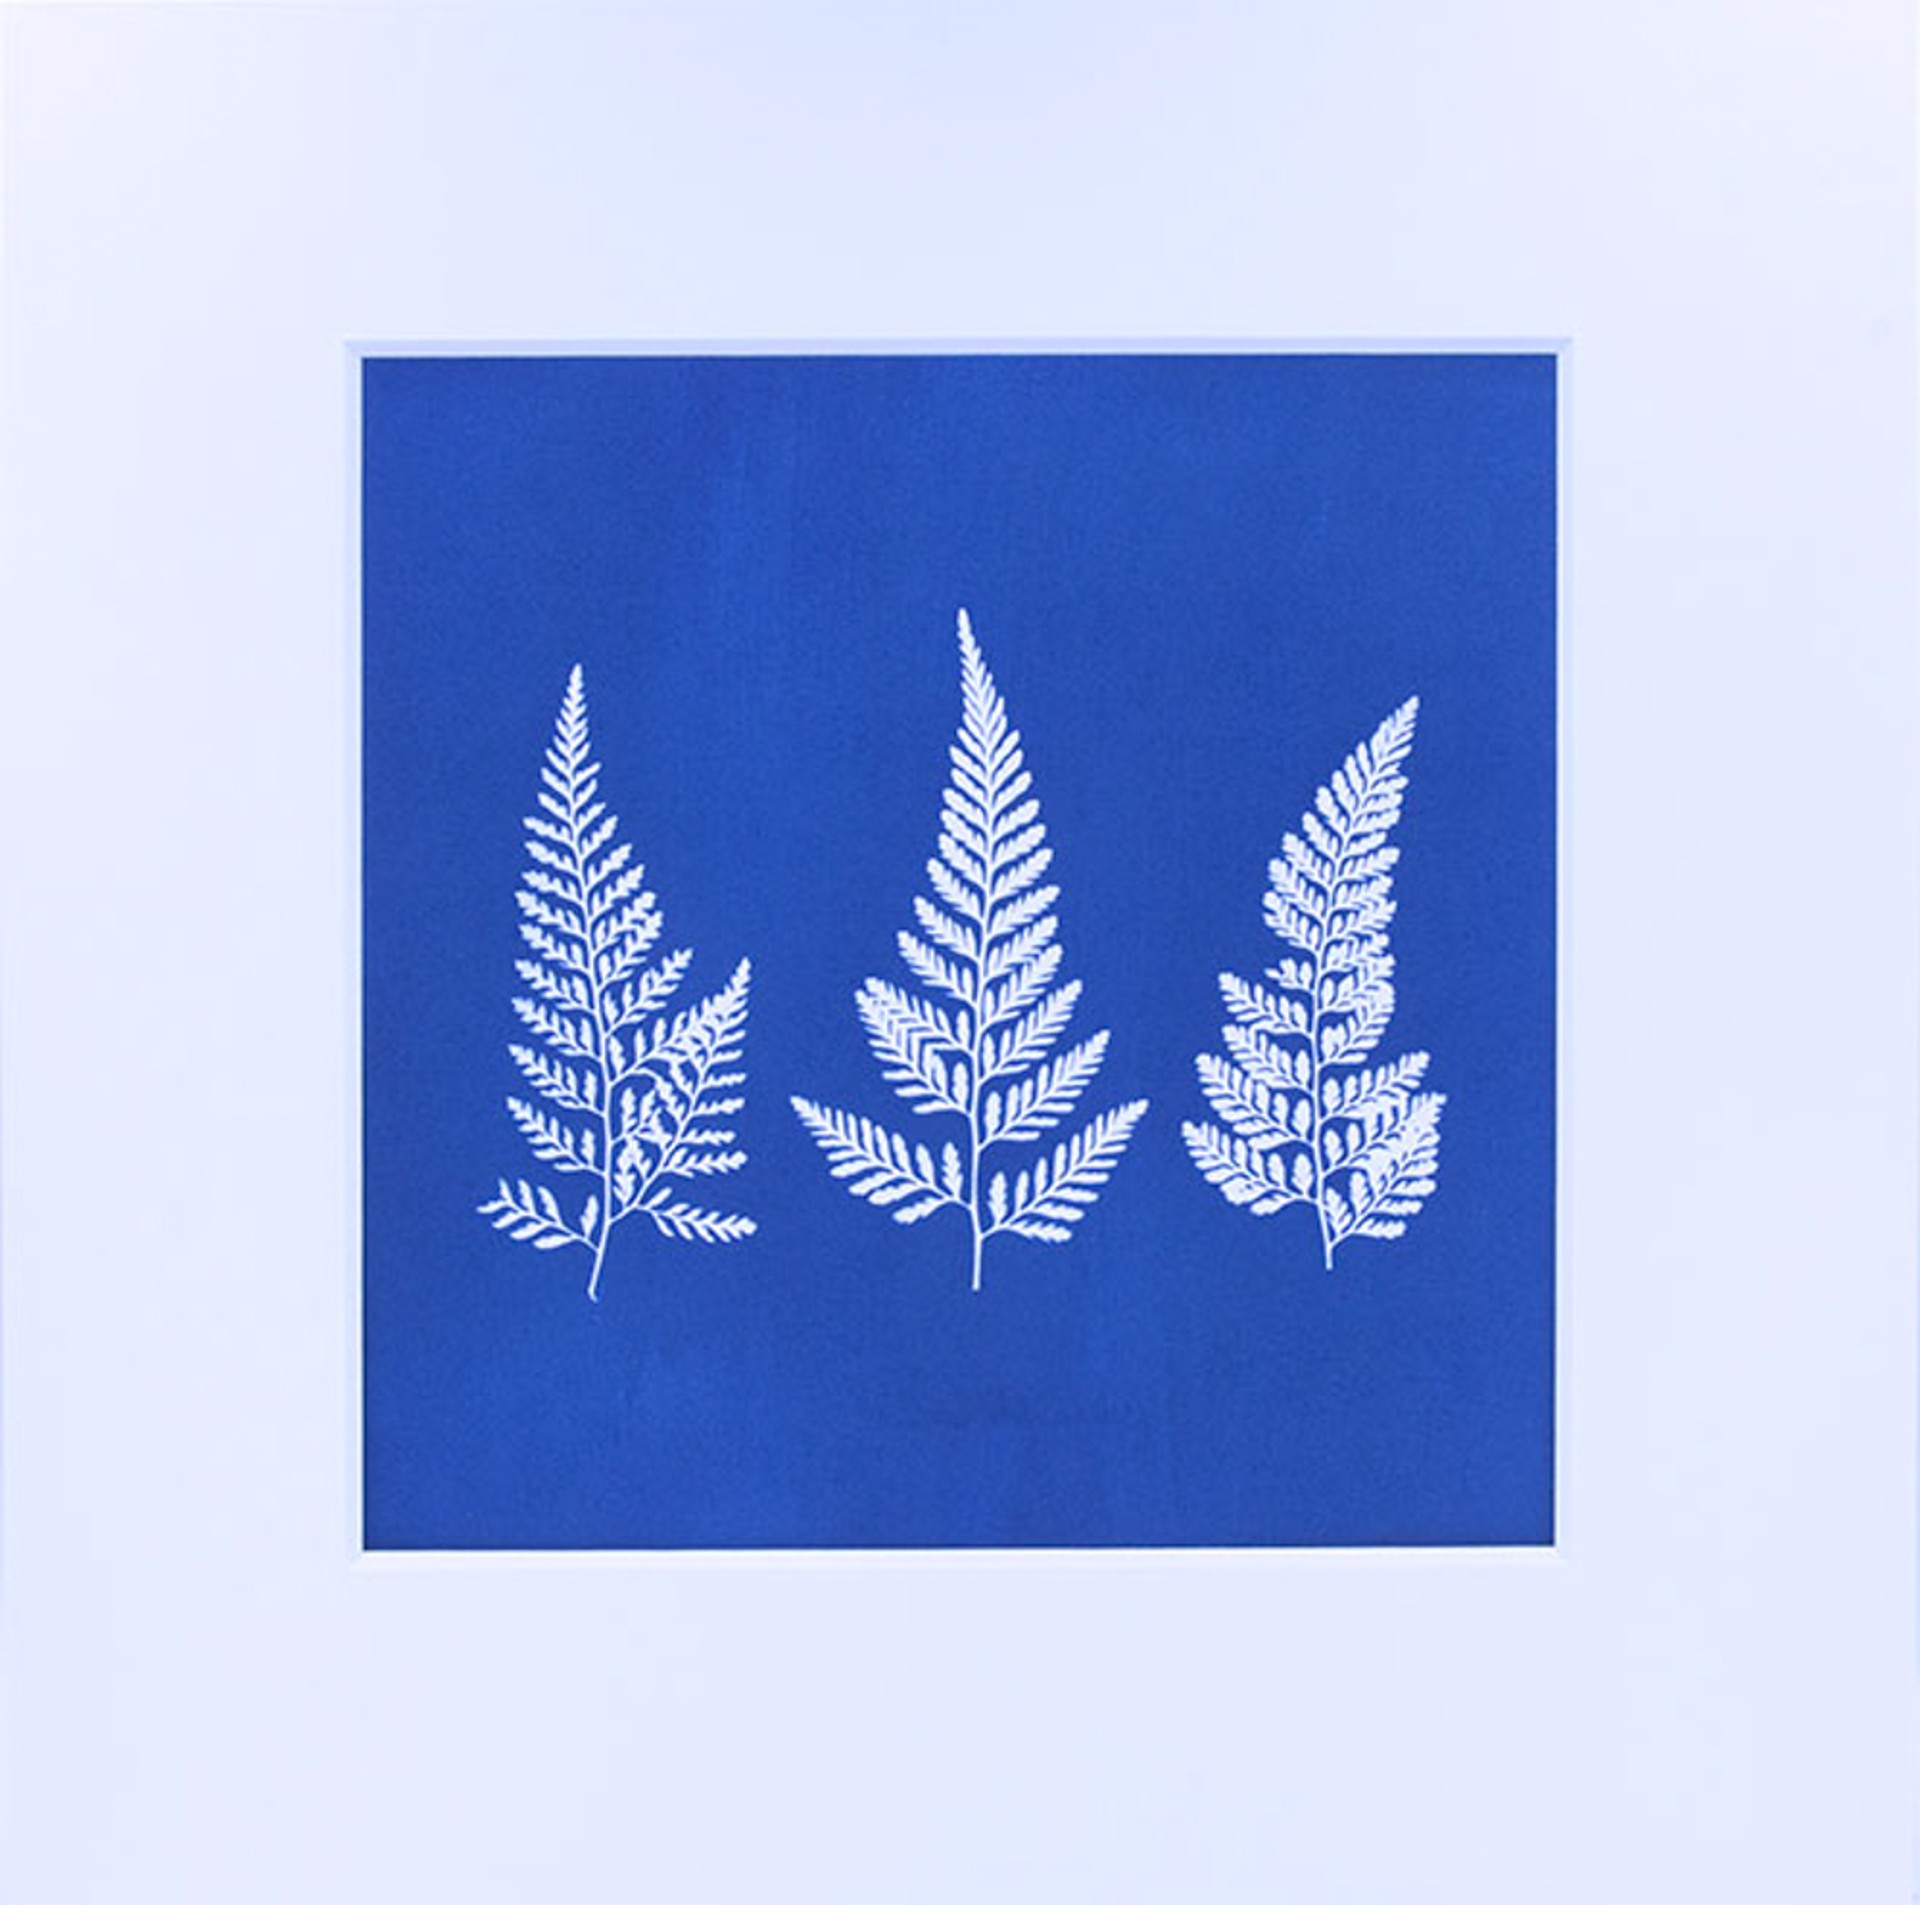 Three Ferns by Ashley Jones